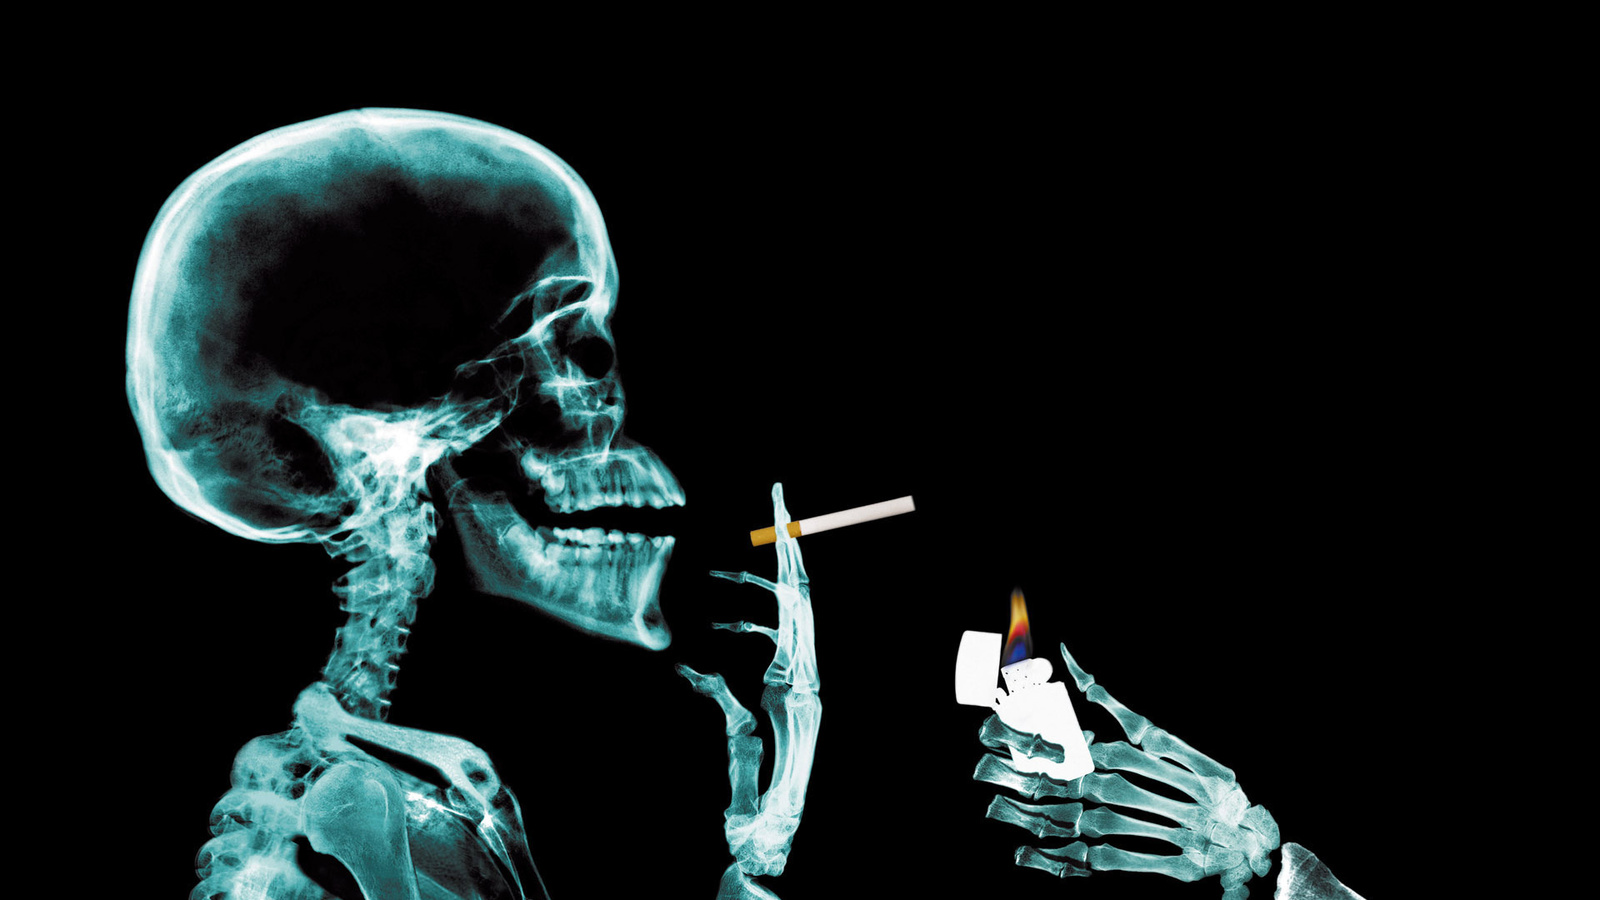 голова, курильщик, курение, череп рентген, текстура, фон, скачать фото, smoking head skull x-ray texture background